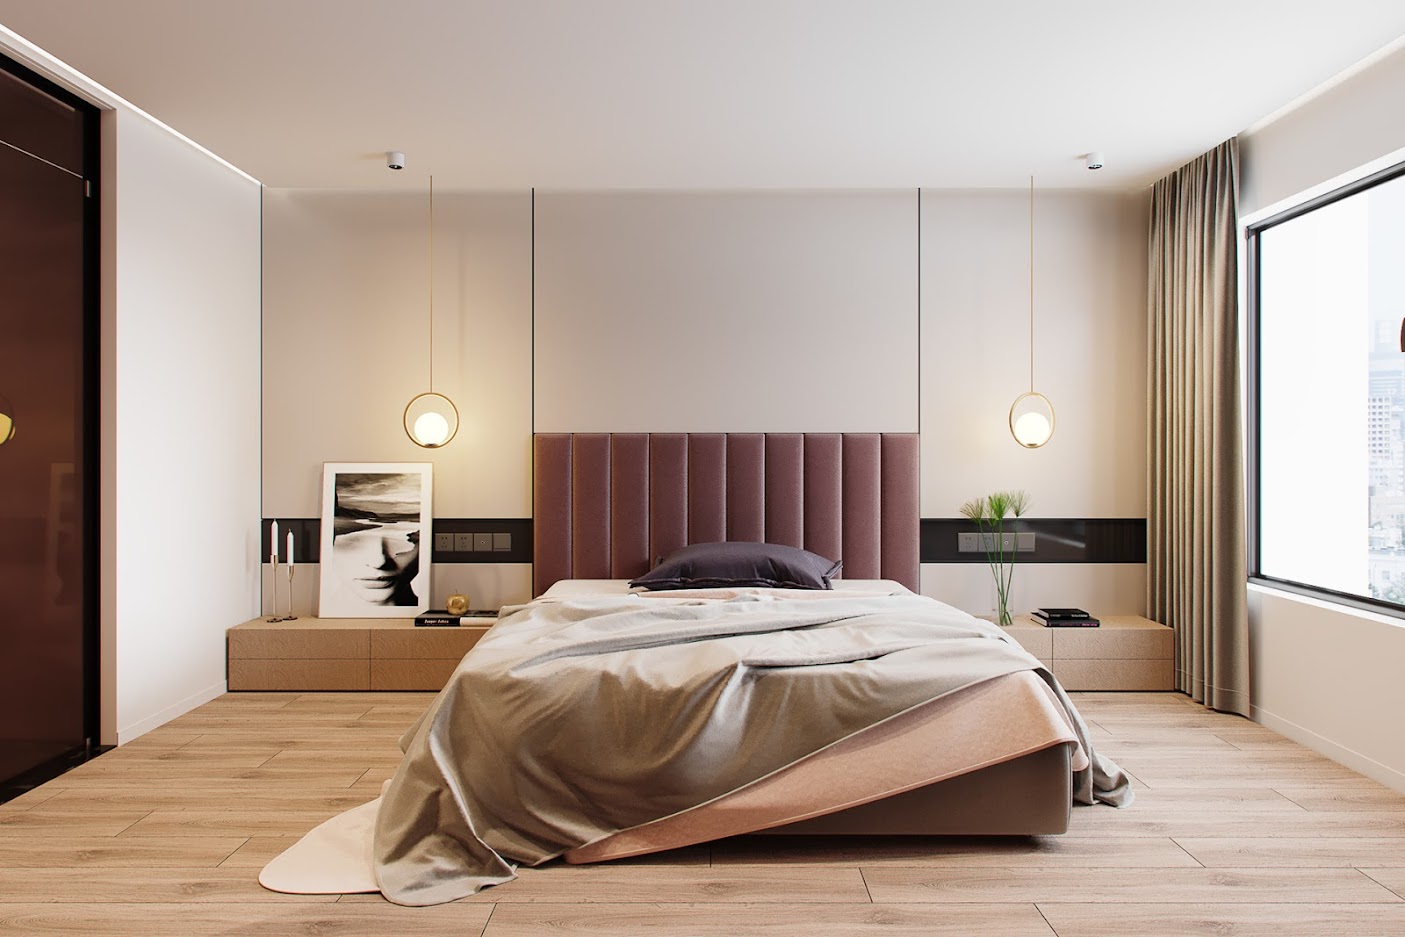 Hình ảnh phòng ngủ chung cư phong cách hiện đại